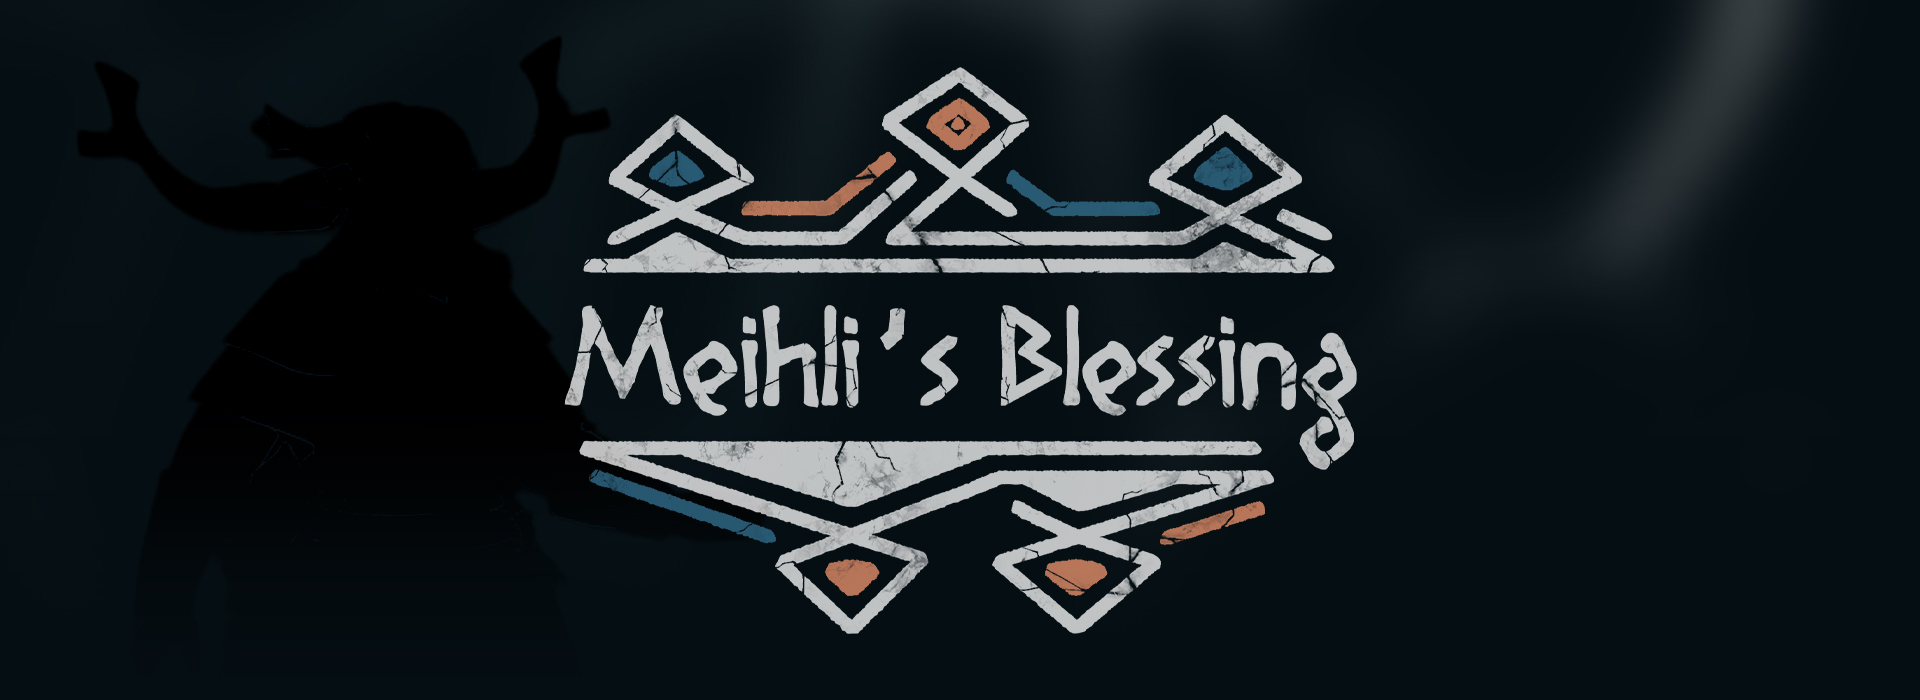 Meihli's Blessing